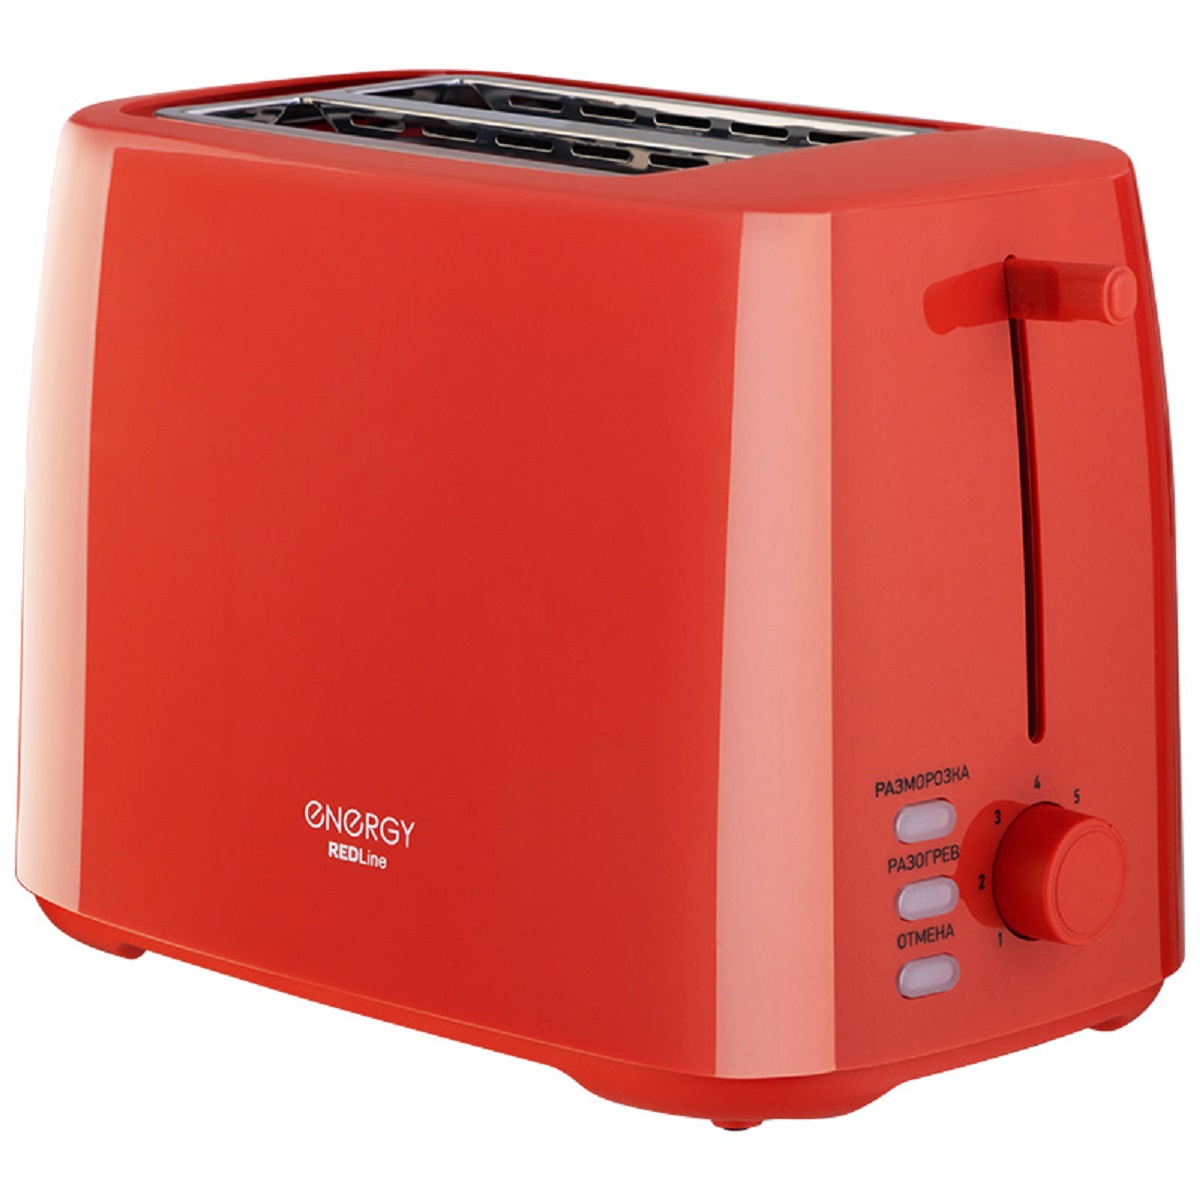 Тостер Energy EN-260 красный тостер energy en 260 красный